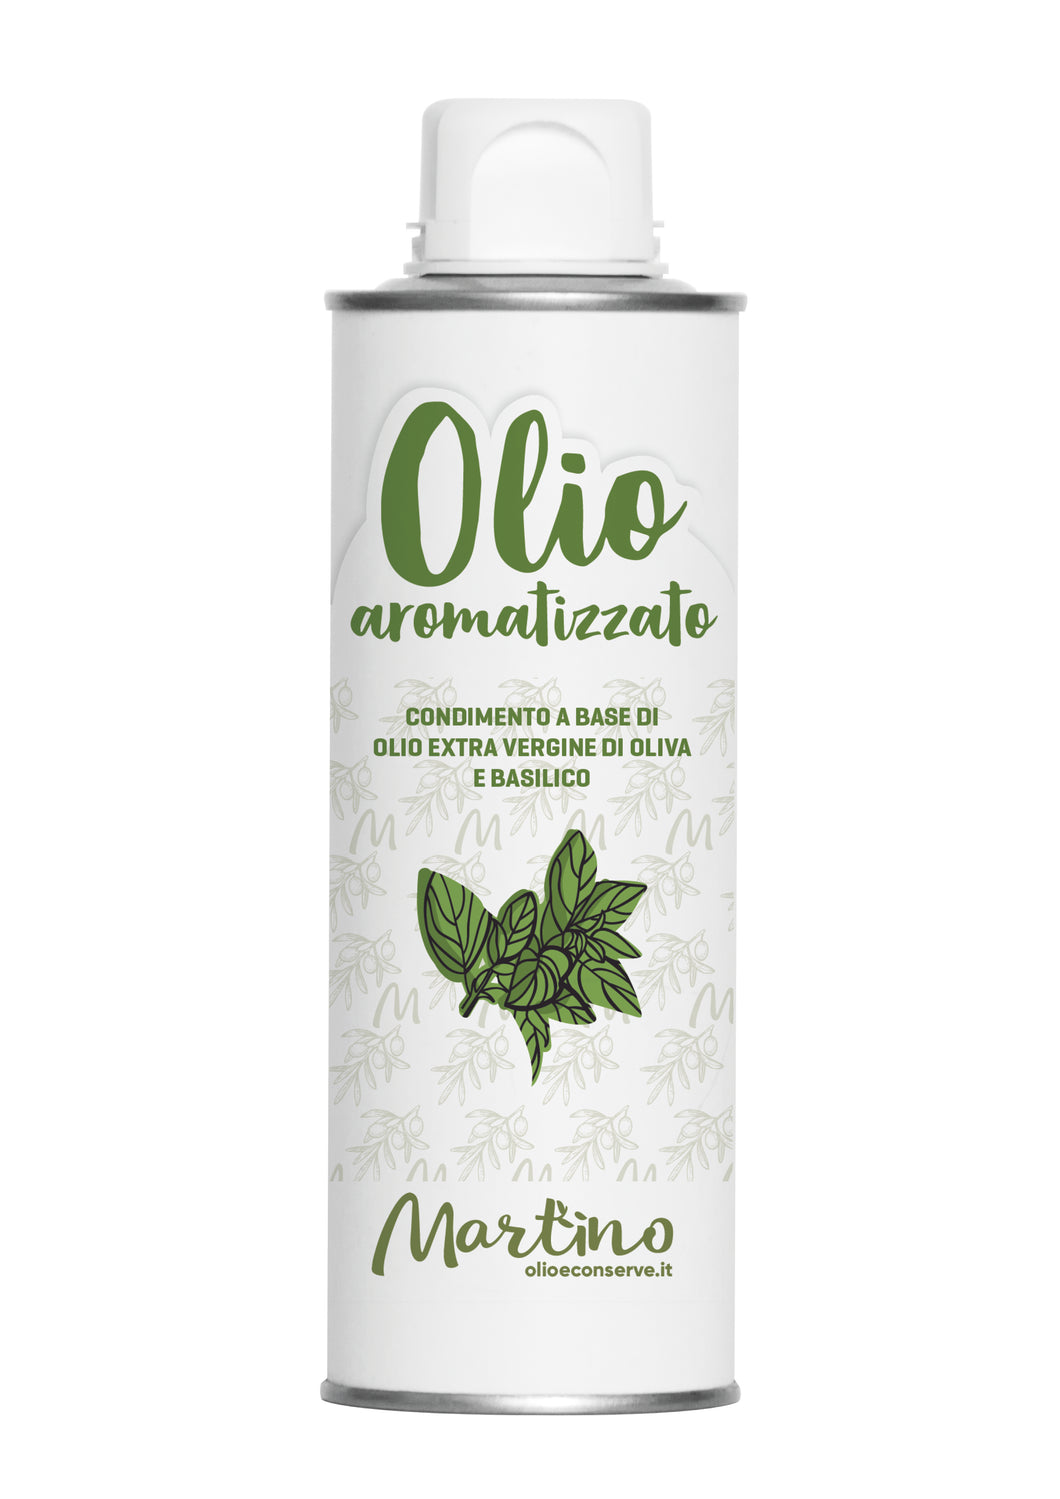 Martino - Condimento Aromatizzato al Basilico con Olio Extravergine d'Oliva - Lattina 250 ml con tappo Antiriempimento